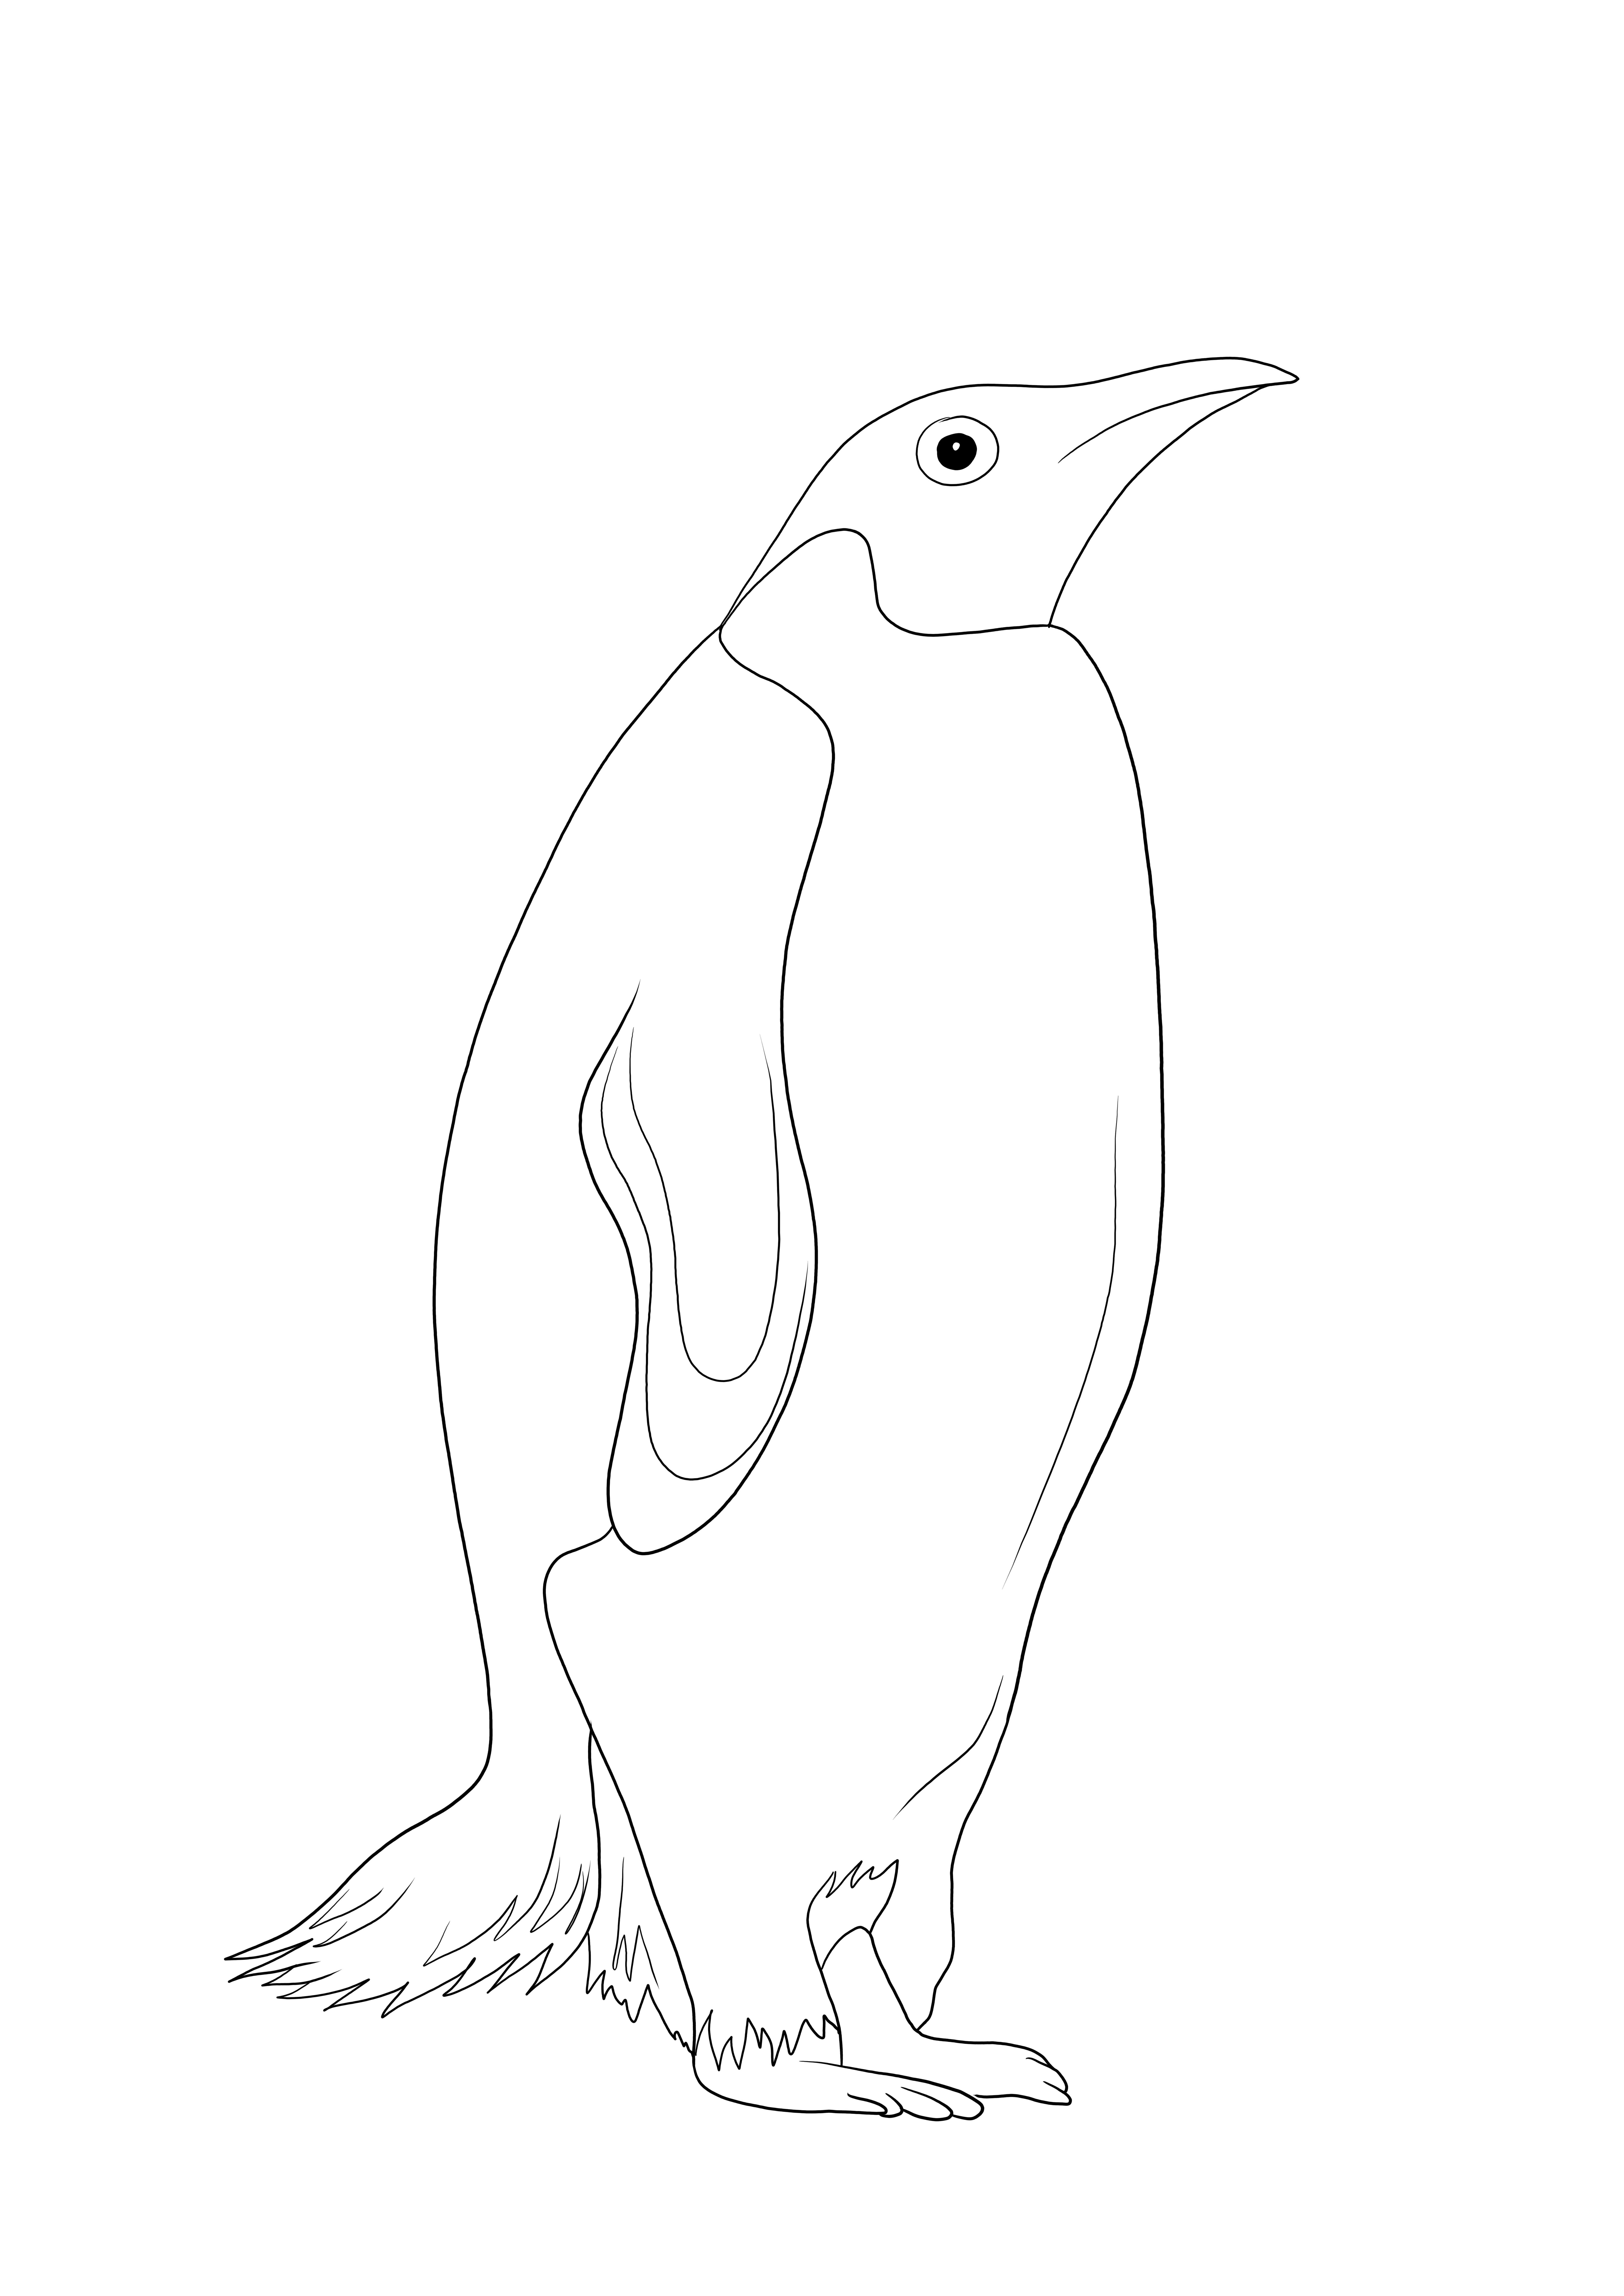 Inteligentny i darmowy arkusz do kolorowania pingwina — świetne narzędzie do nauki o zwierzętach morskich